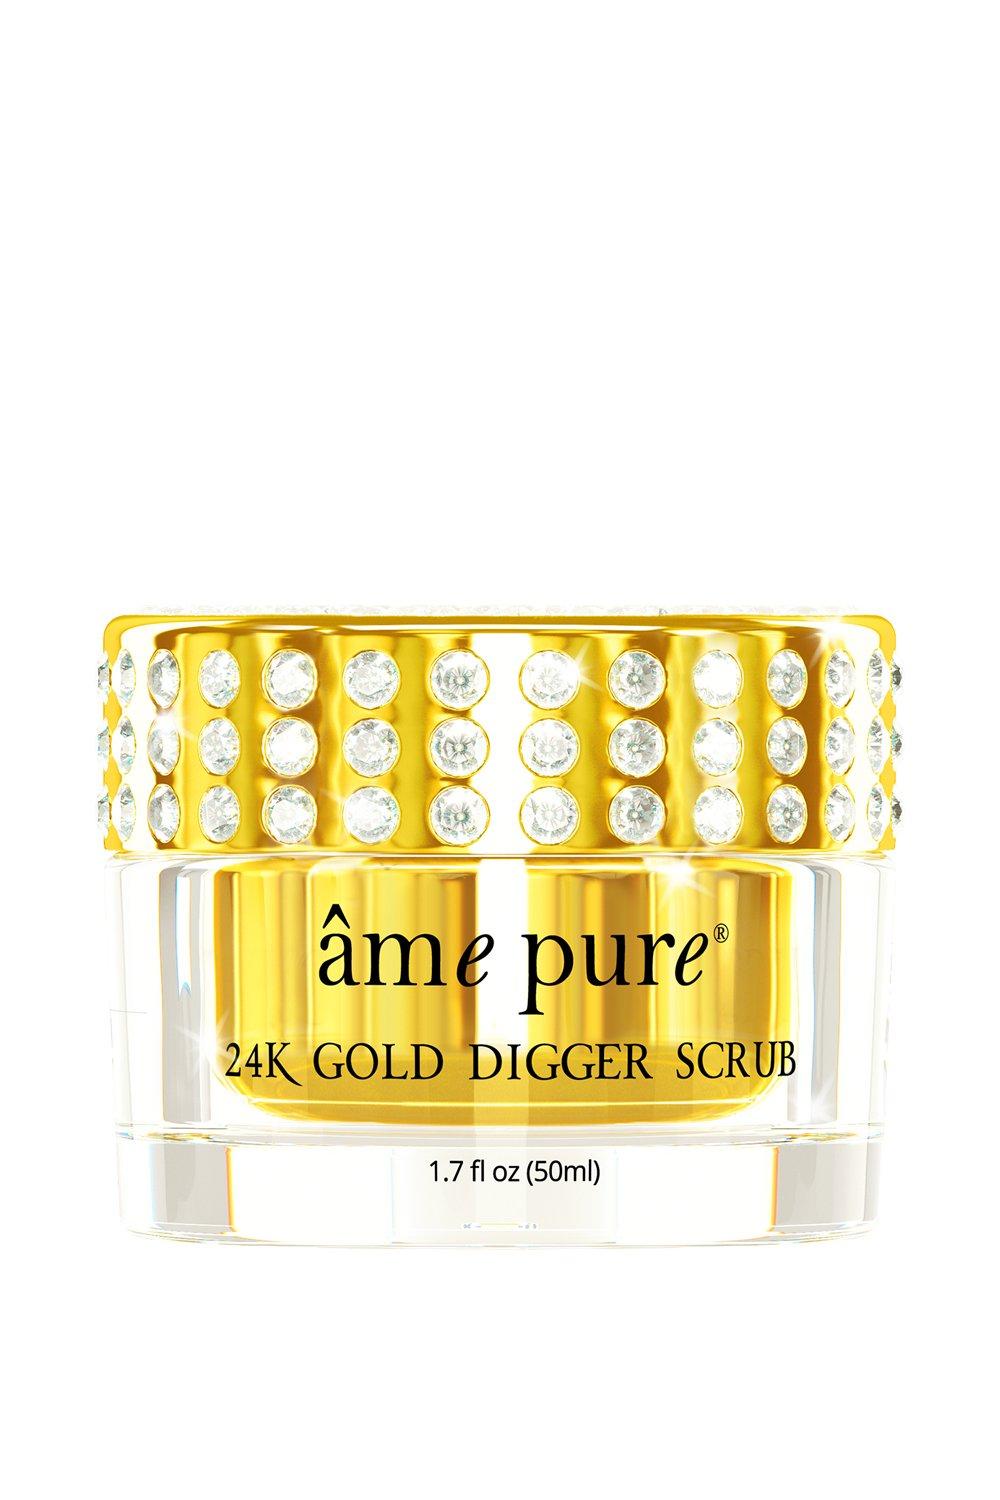 âme pure  24K Gold Digger Scrub - Luxuriöse und zarte Gesichtpeeling mit reinen 24K Goldflocken und Vitamin E 